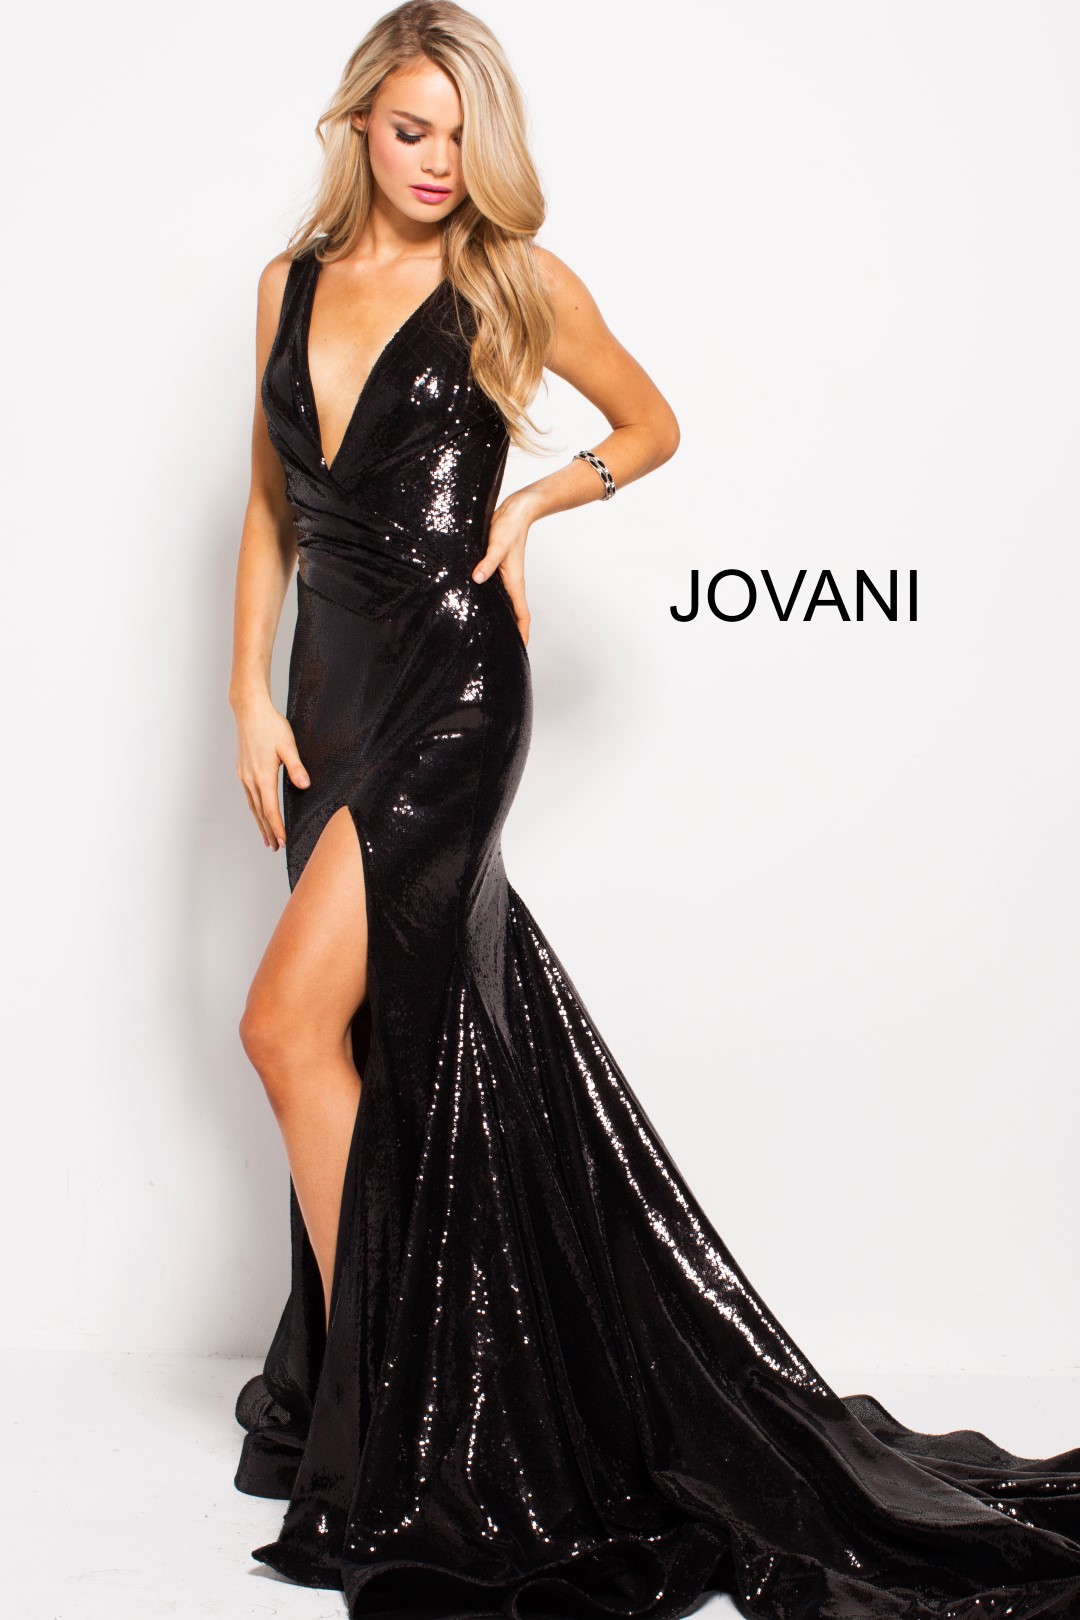 JOVANI 55606| EVENING GOWN| PROM DRESS| JOVANI